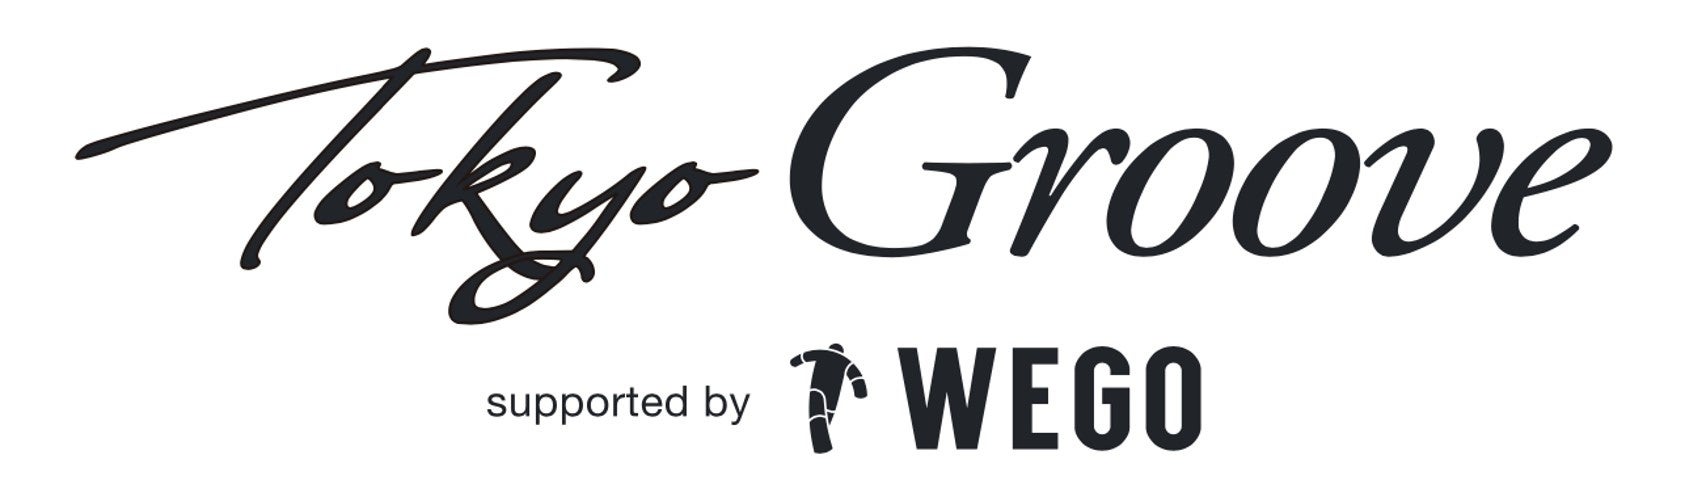 これからの日本の音楽シーンを担う新進気鋭のアーティストにフォーカスを当てた音楽イベント「“TokyoGroove” supported by WEGO」開催